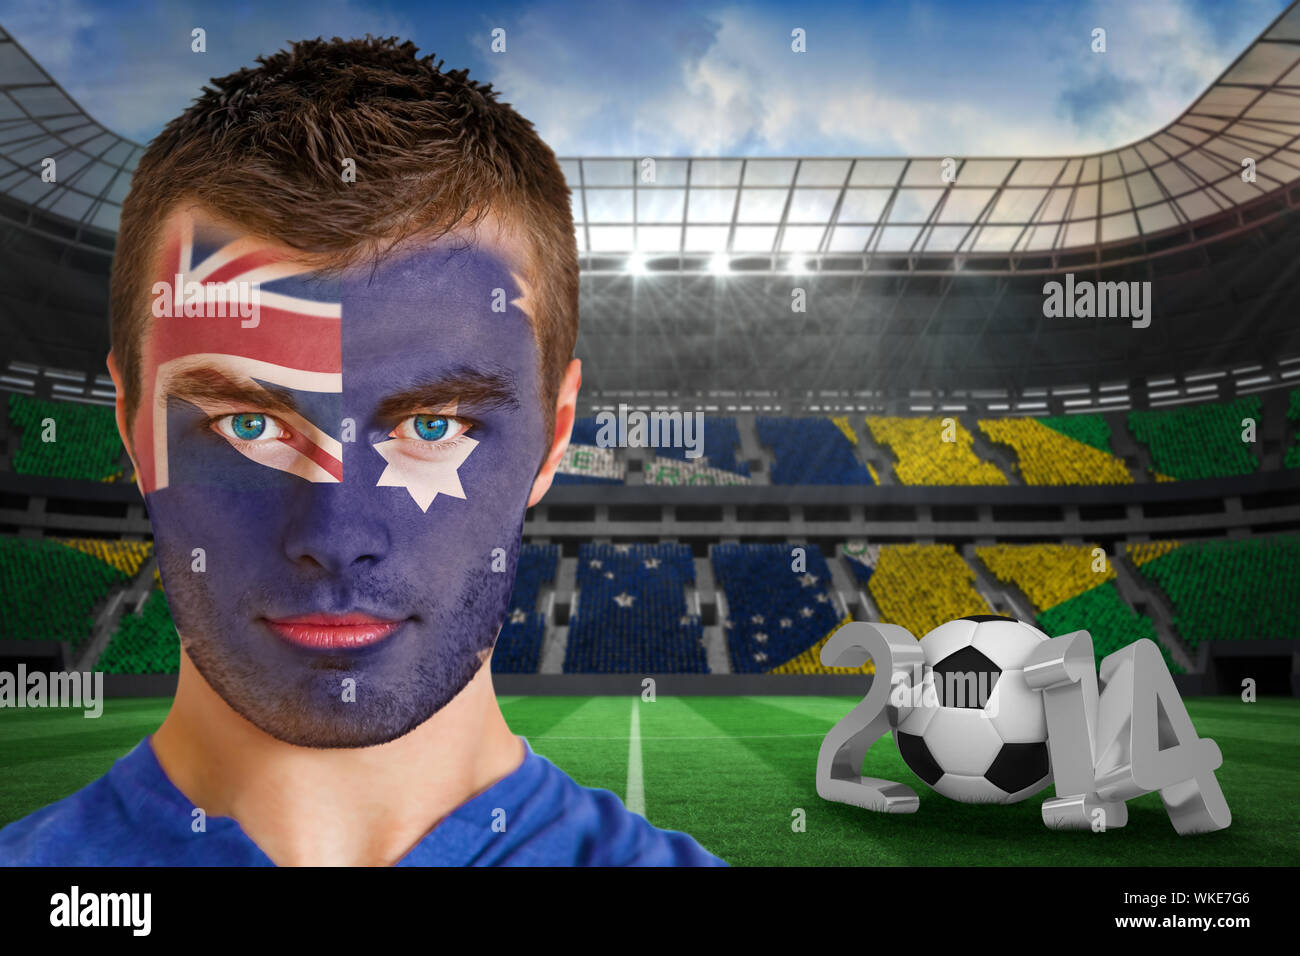 Les jeunes de l'Australie ventilateur avec la peinture pour le visage  contre le grand stade de football brésilien avec des fans Photo Stock -  Alamy